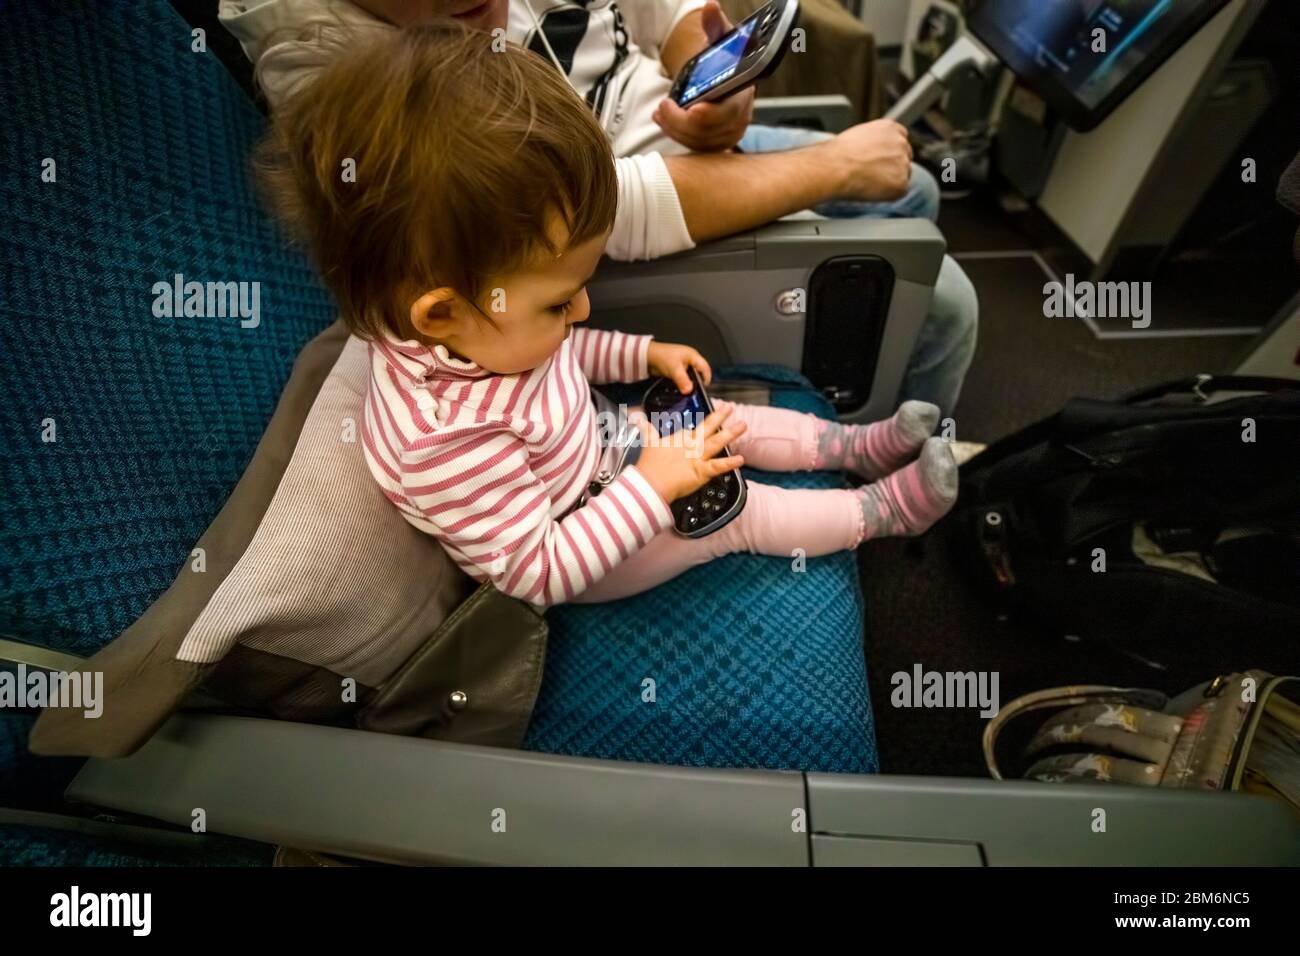 Unterhaltung an Bord des Flugzeugs. Kleinkind sitzen auf dem Flugzeug in den Sitz und spielen Spaß in der Multimedia-System Fernbedienung. Stockfoto